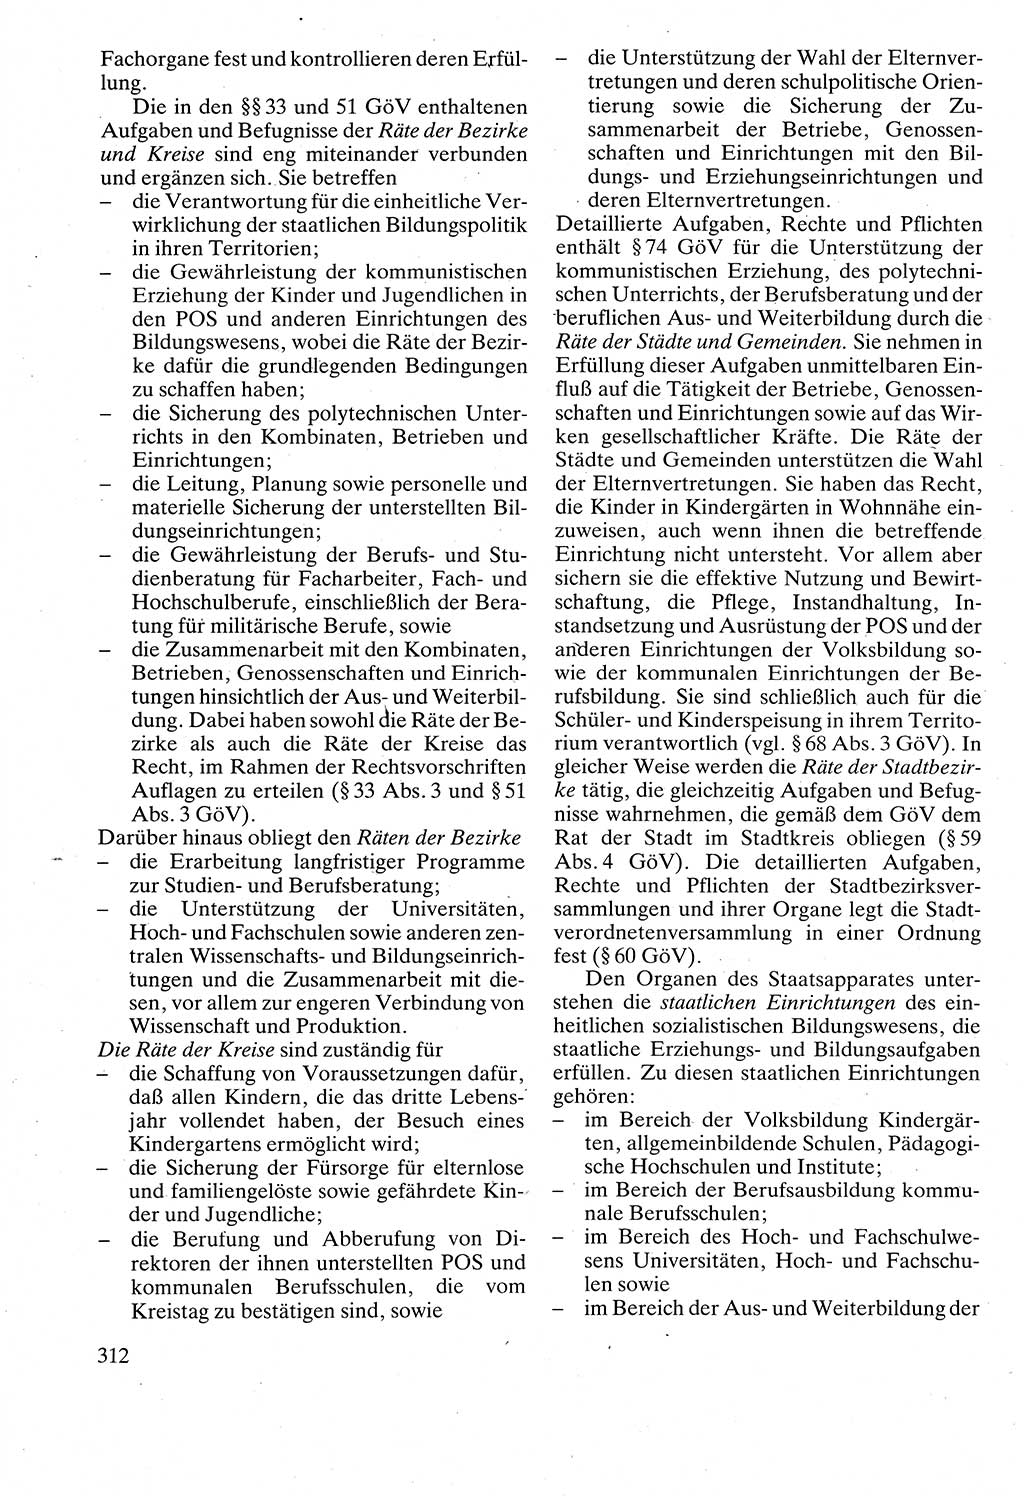 Verwaltungsrecht [Deutsche Demokratische Republik (DDR)], Lehrbuch 1988, Seite 312 (Verw.-R. DDR Lb. 1988, S. 312)